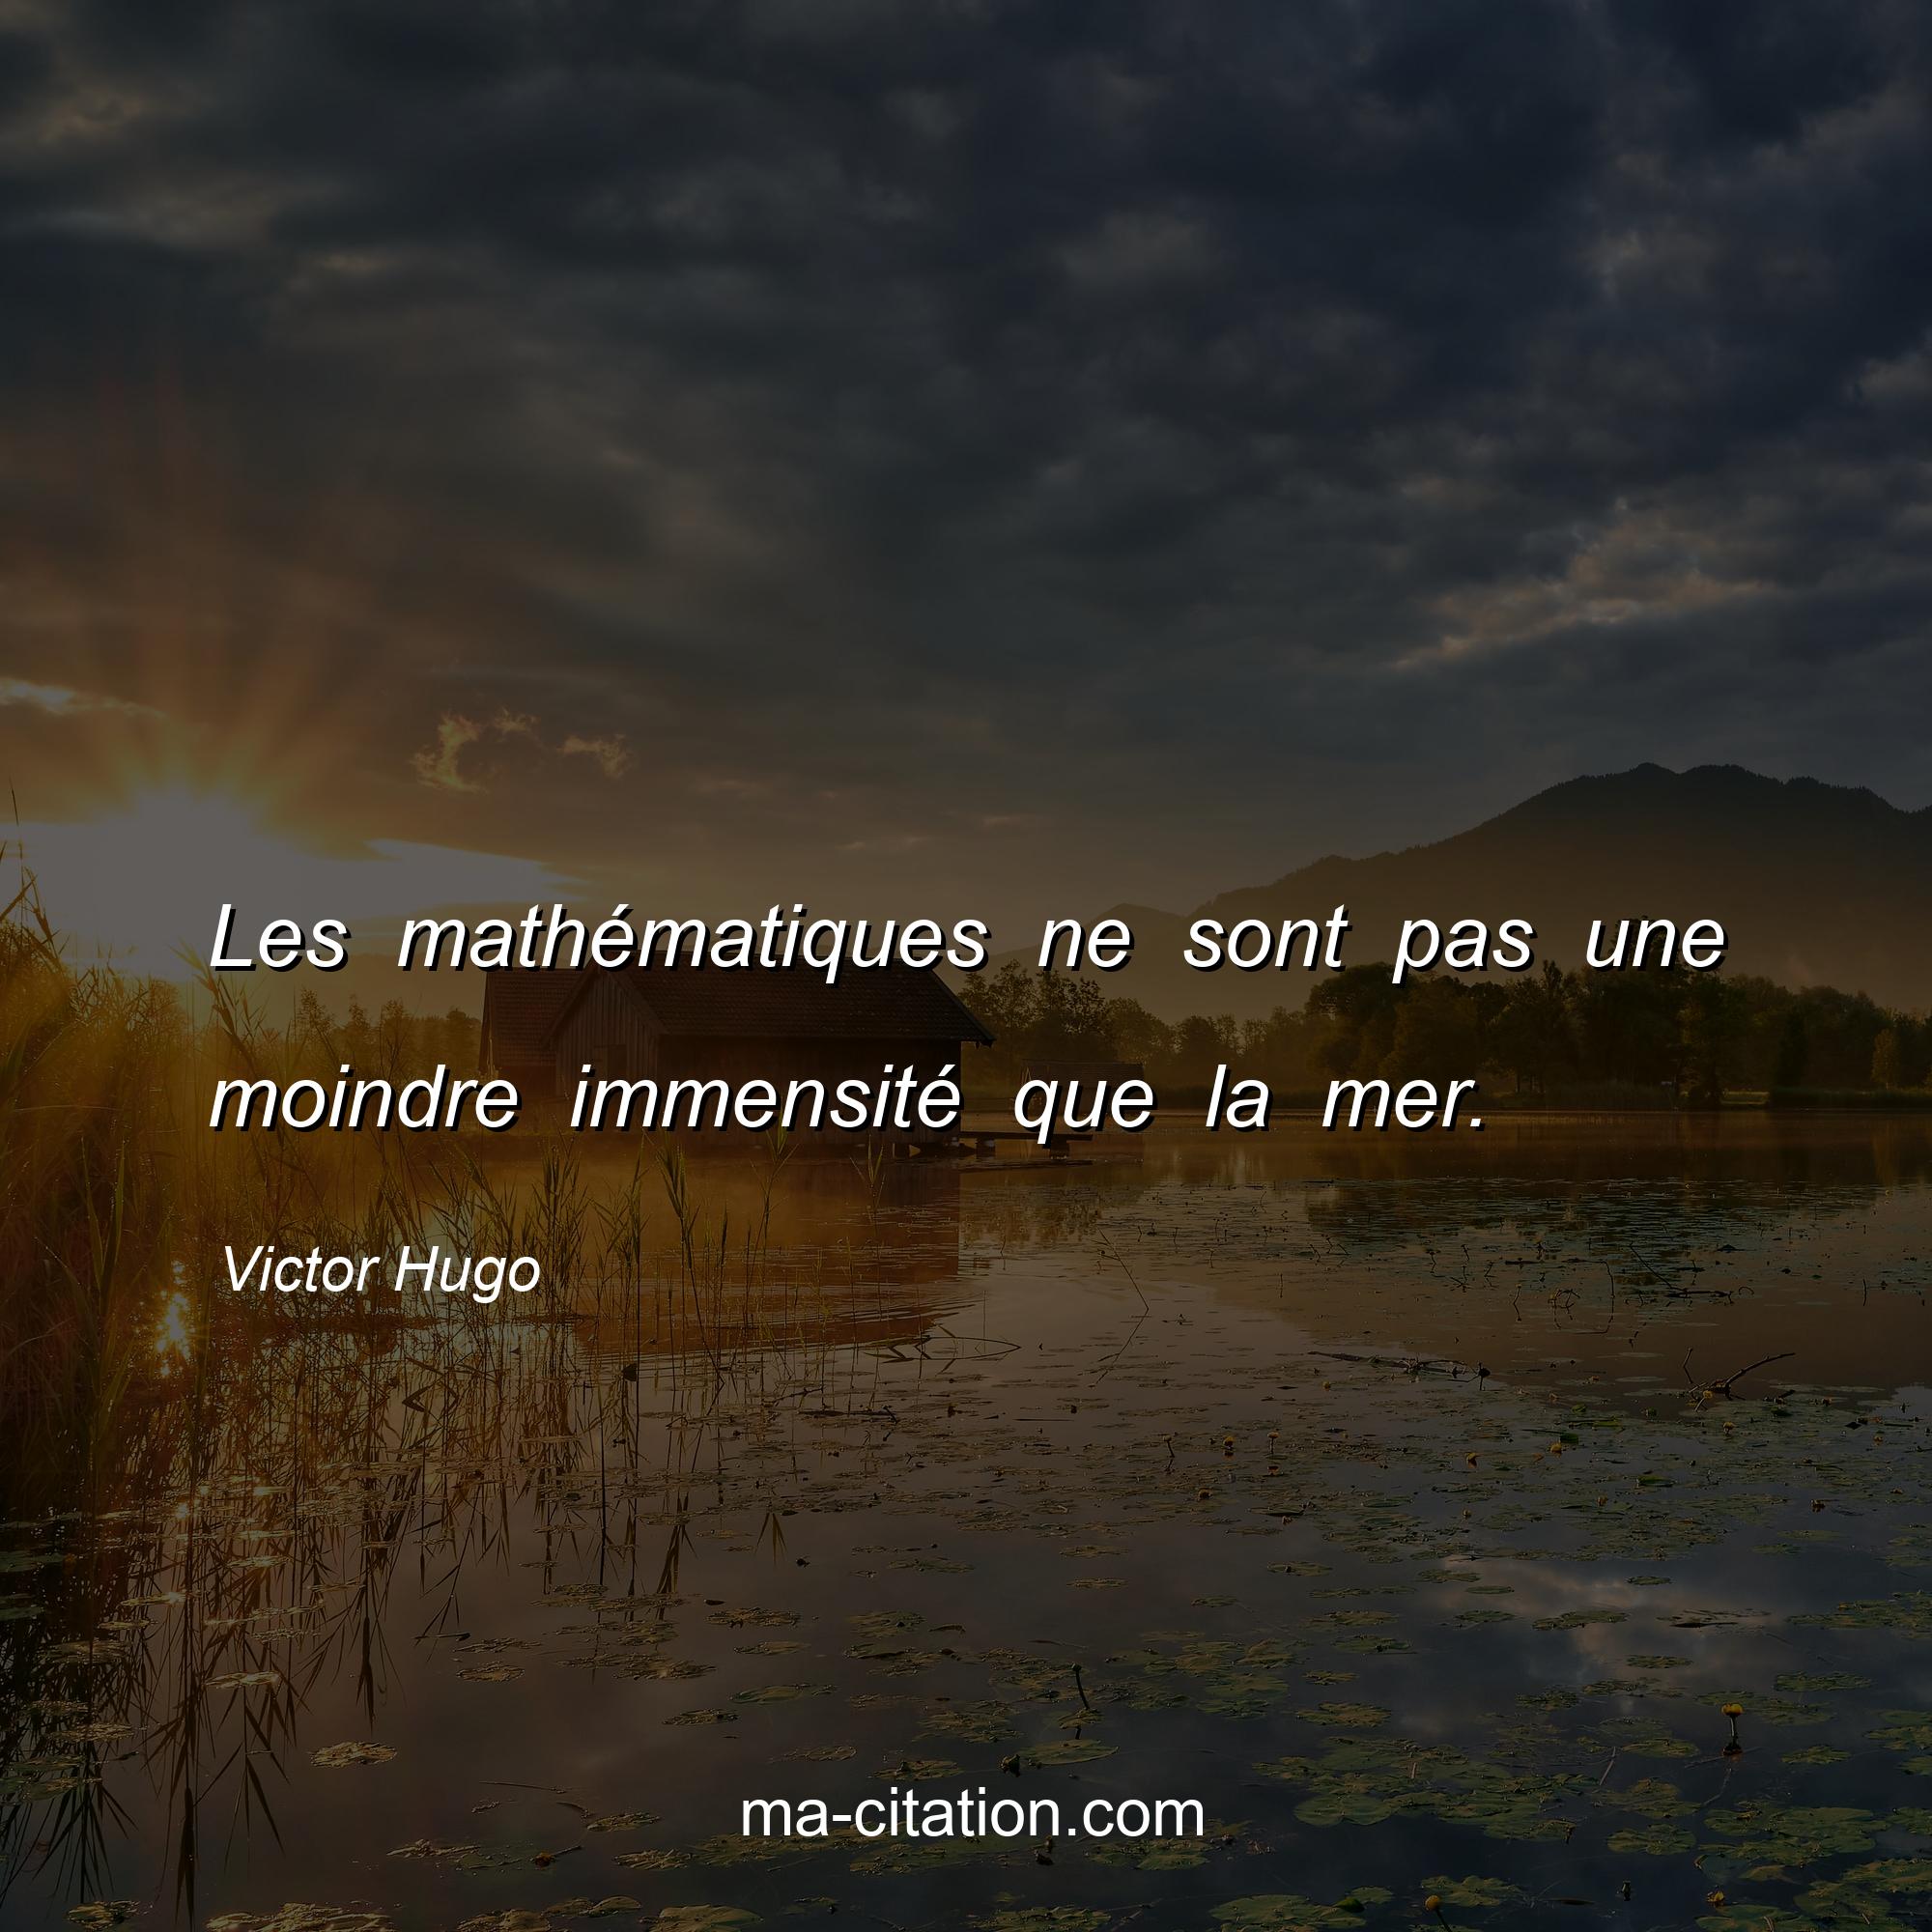 Victor Hugo : Les mathématiques ne sont pas une moindre immensité que la mer.